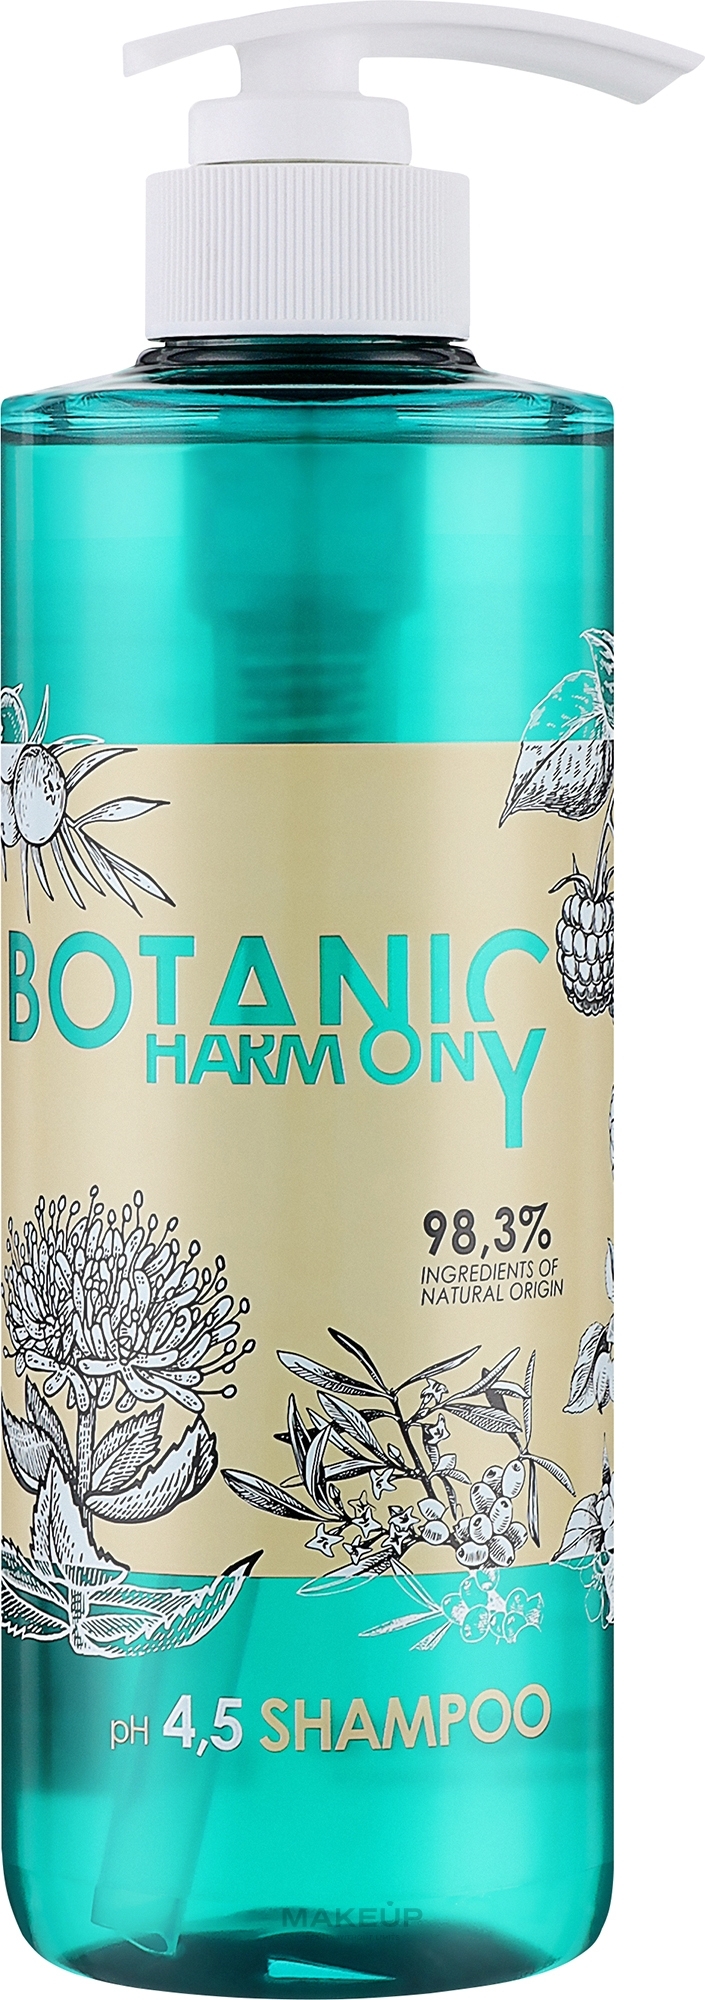 Шампунь для волос - Stapiz Botanic Harmony pH 4.5 Shampoo — фото 500ml